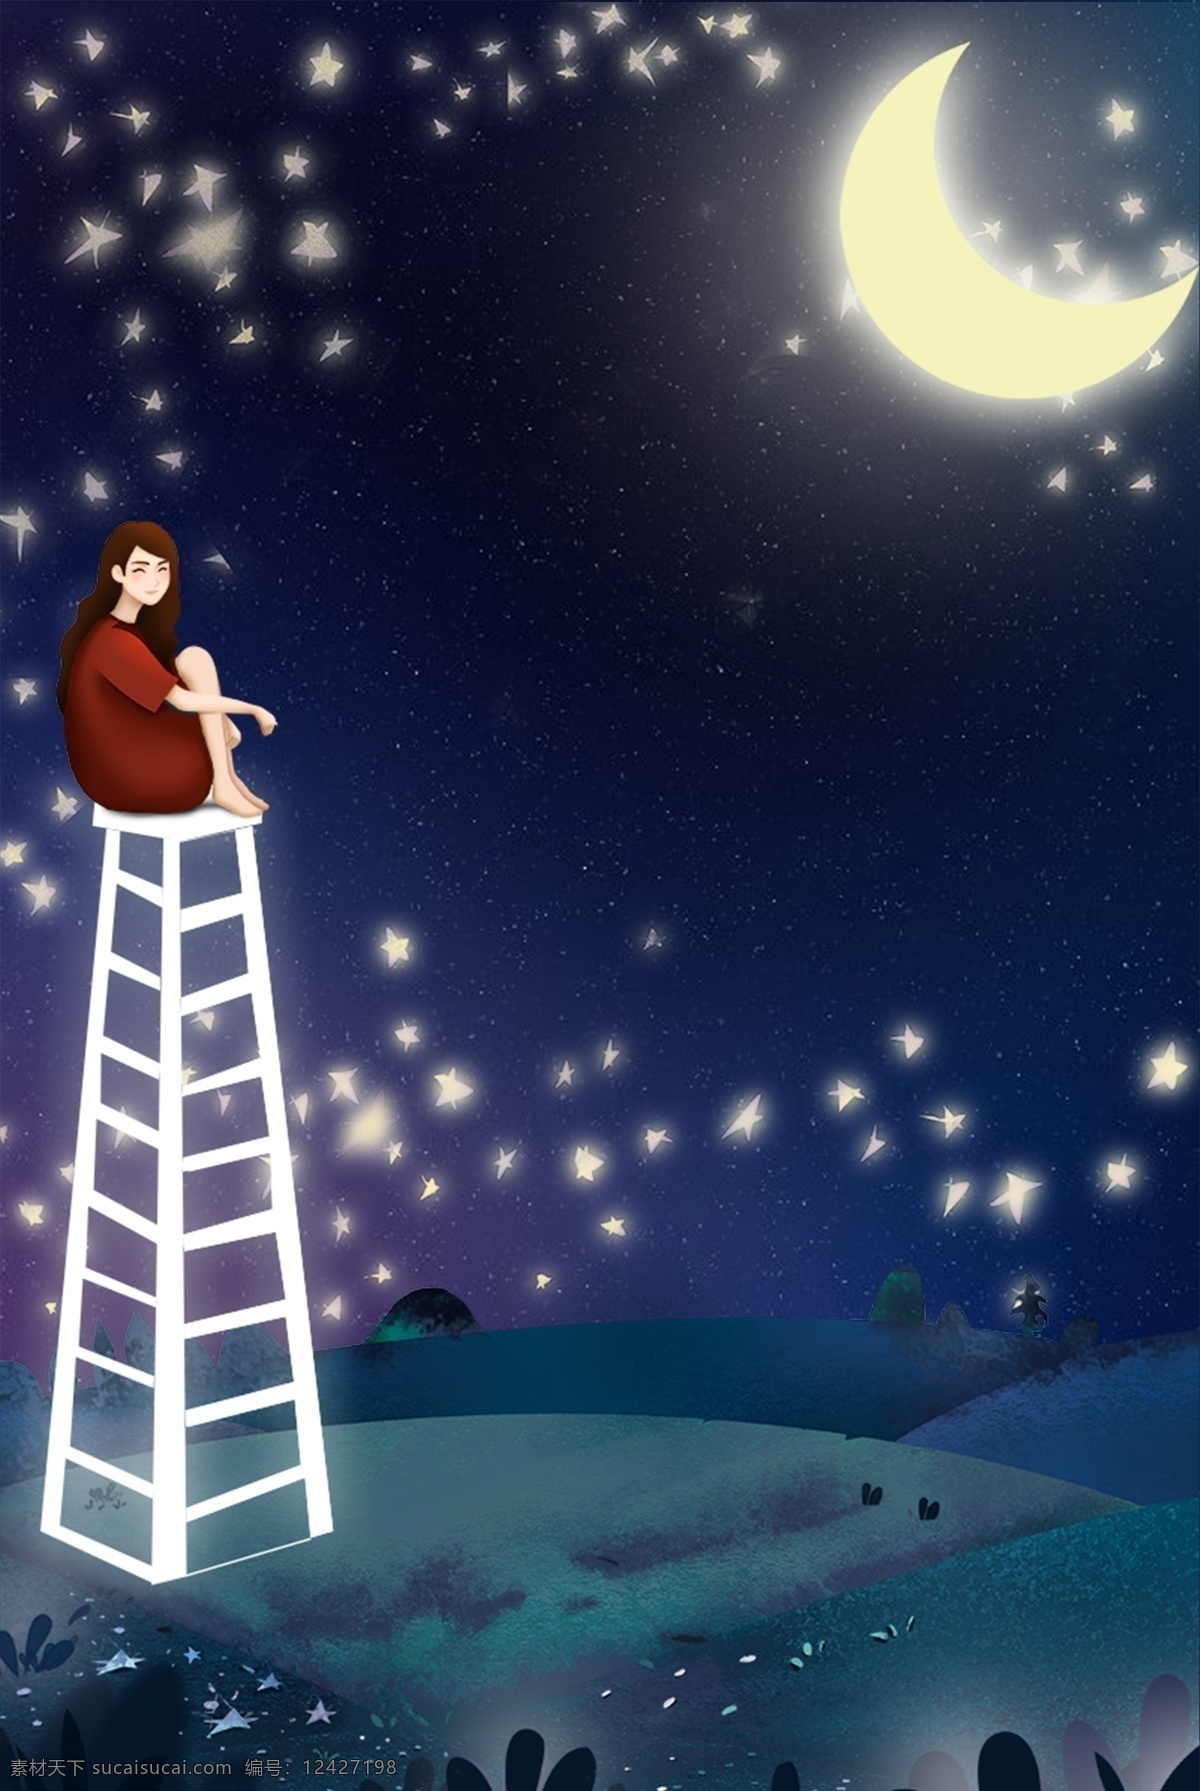 仲夏夜之梦 坐在 梯子 上 女孩 梦想 星空 唯美 蓝色 夜 月亮 星星 云 卡通 插画